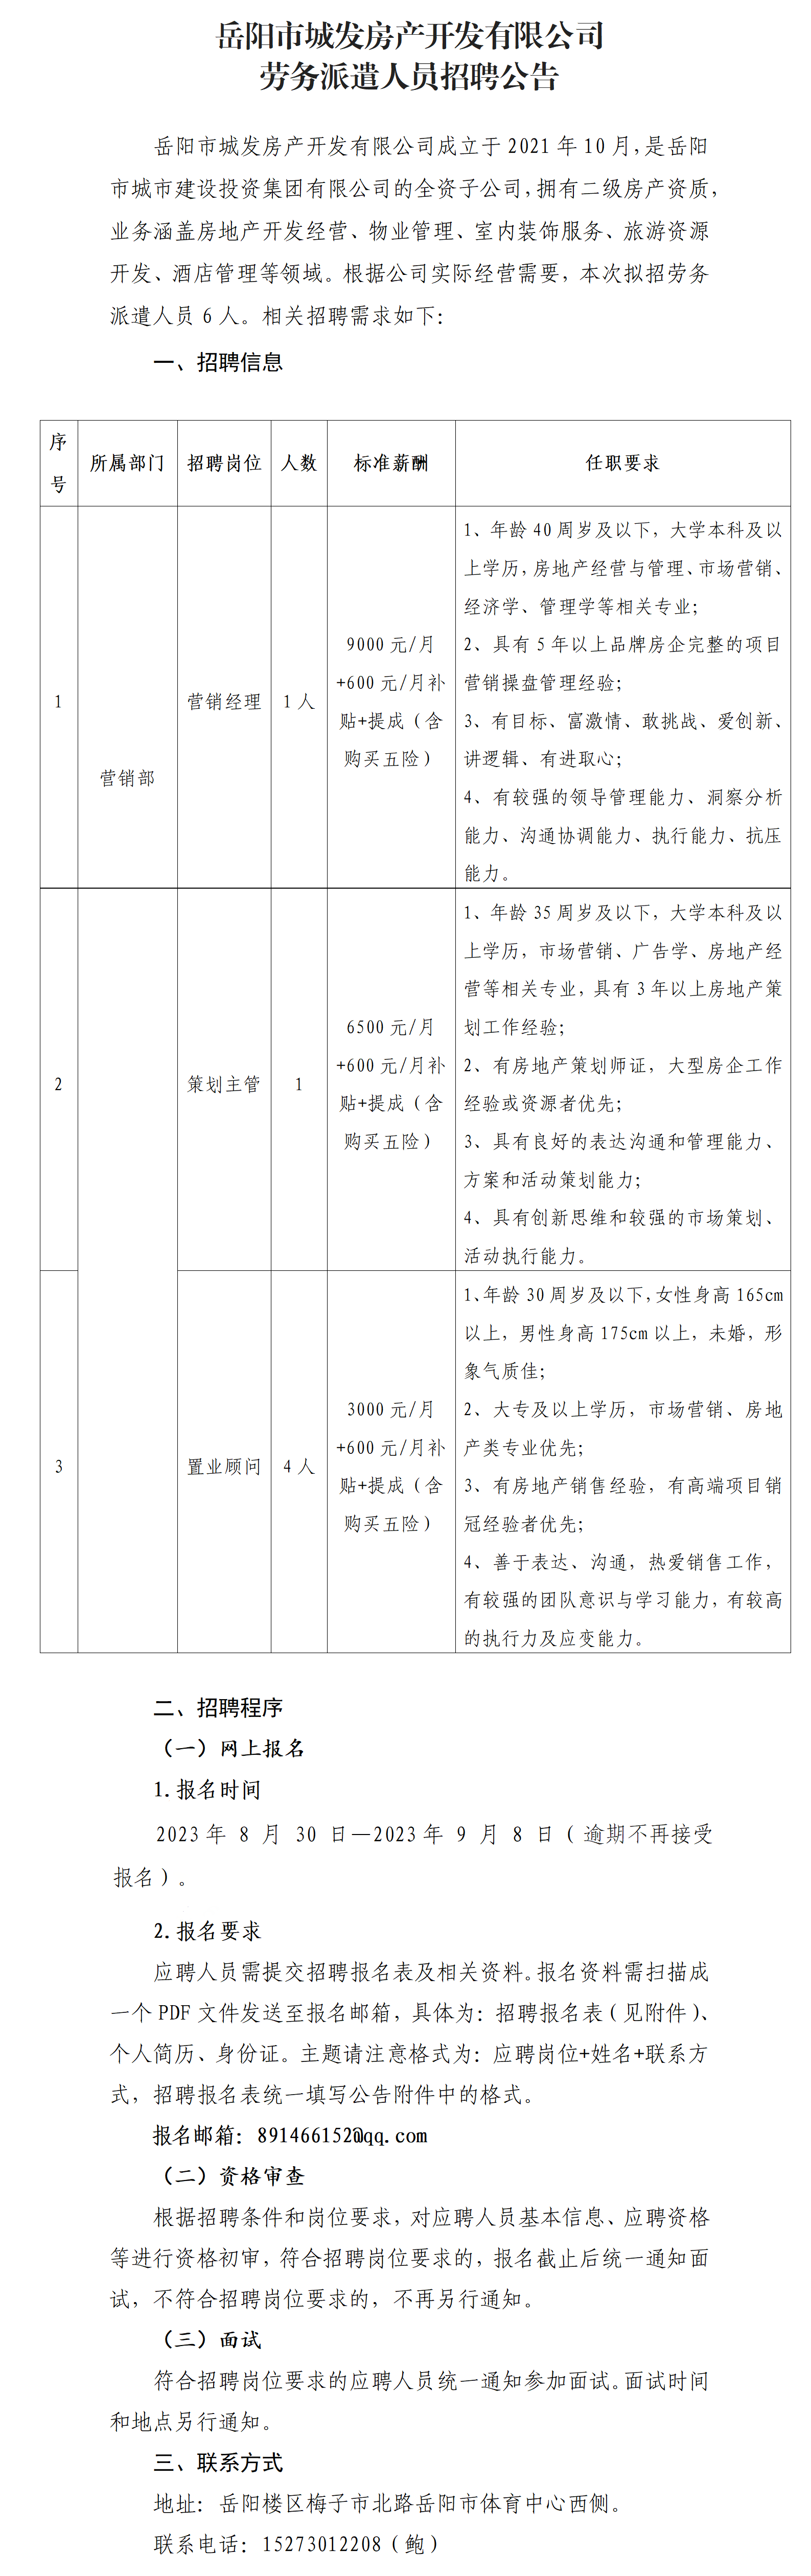 2023年8月城发房产劳派人员招聘公告（6人）(1)_01(2).png